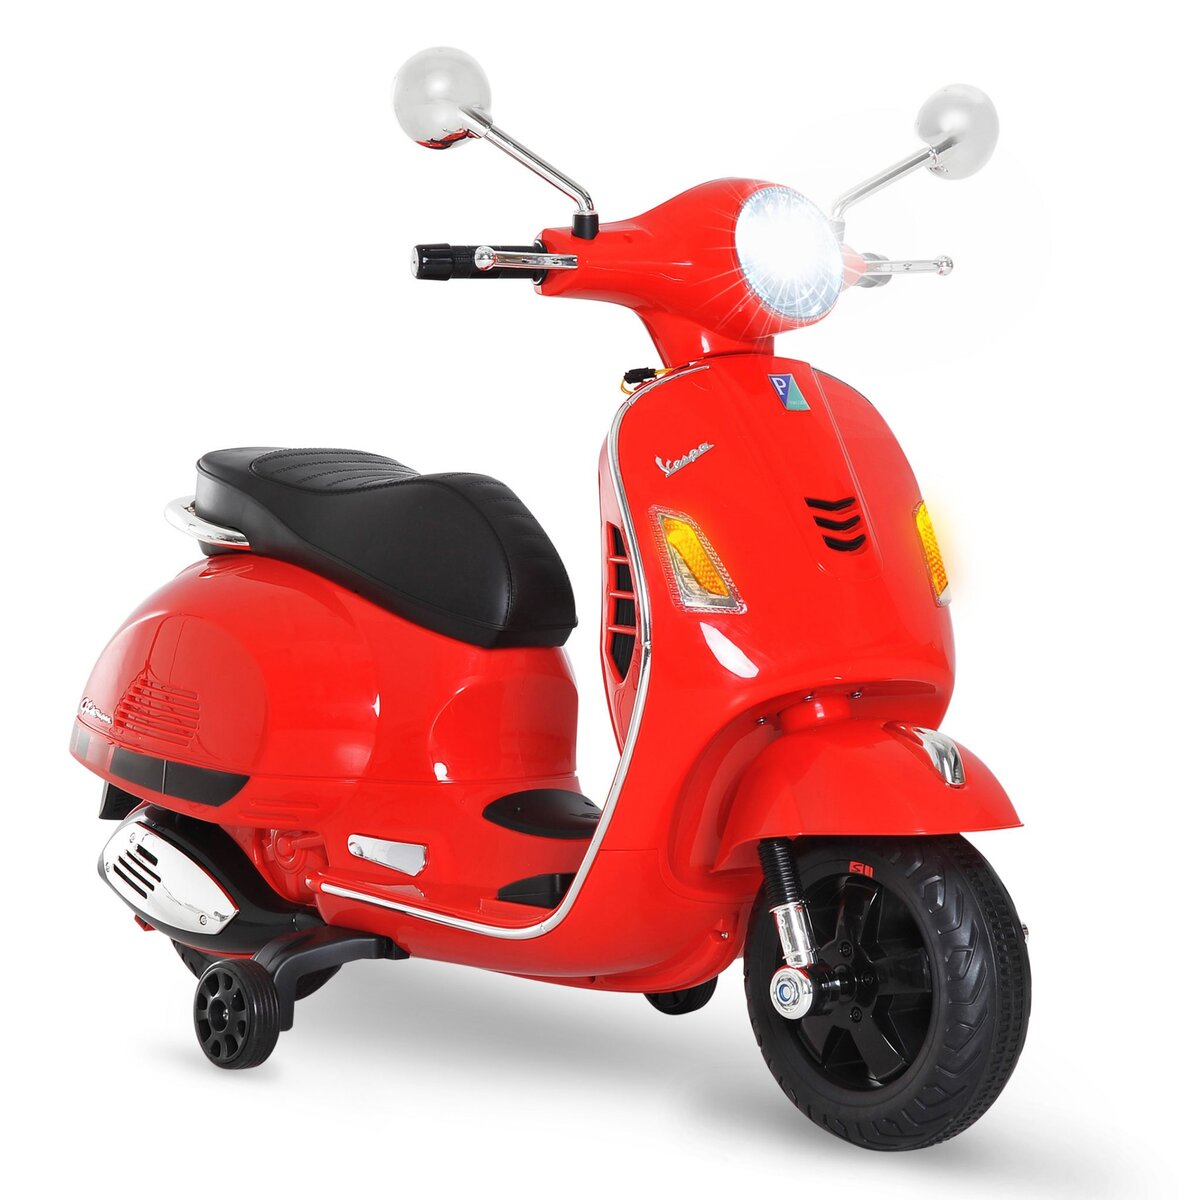 HOMCOM Scooter moto électrique enfants 6 V dim. 102L x 51l x 76H cm musique MP3 port USB klaxon phare feu AR rouge Vespa